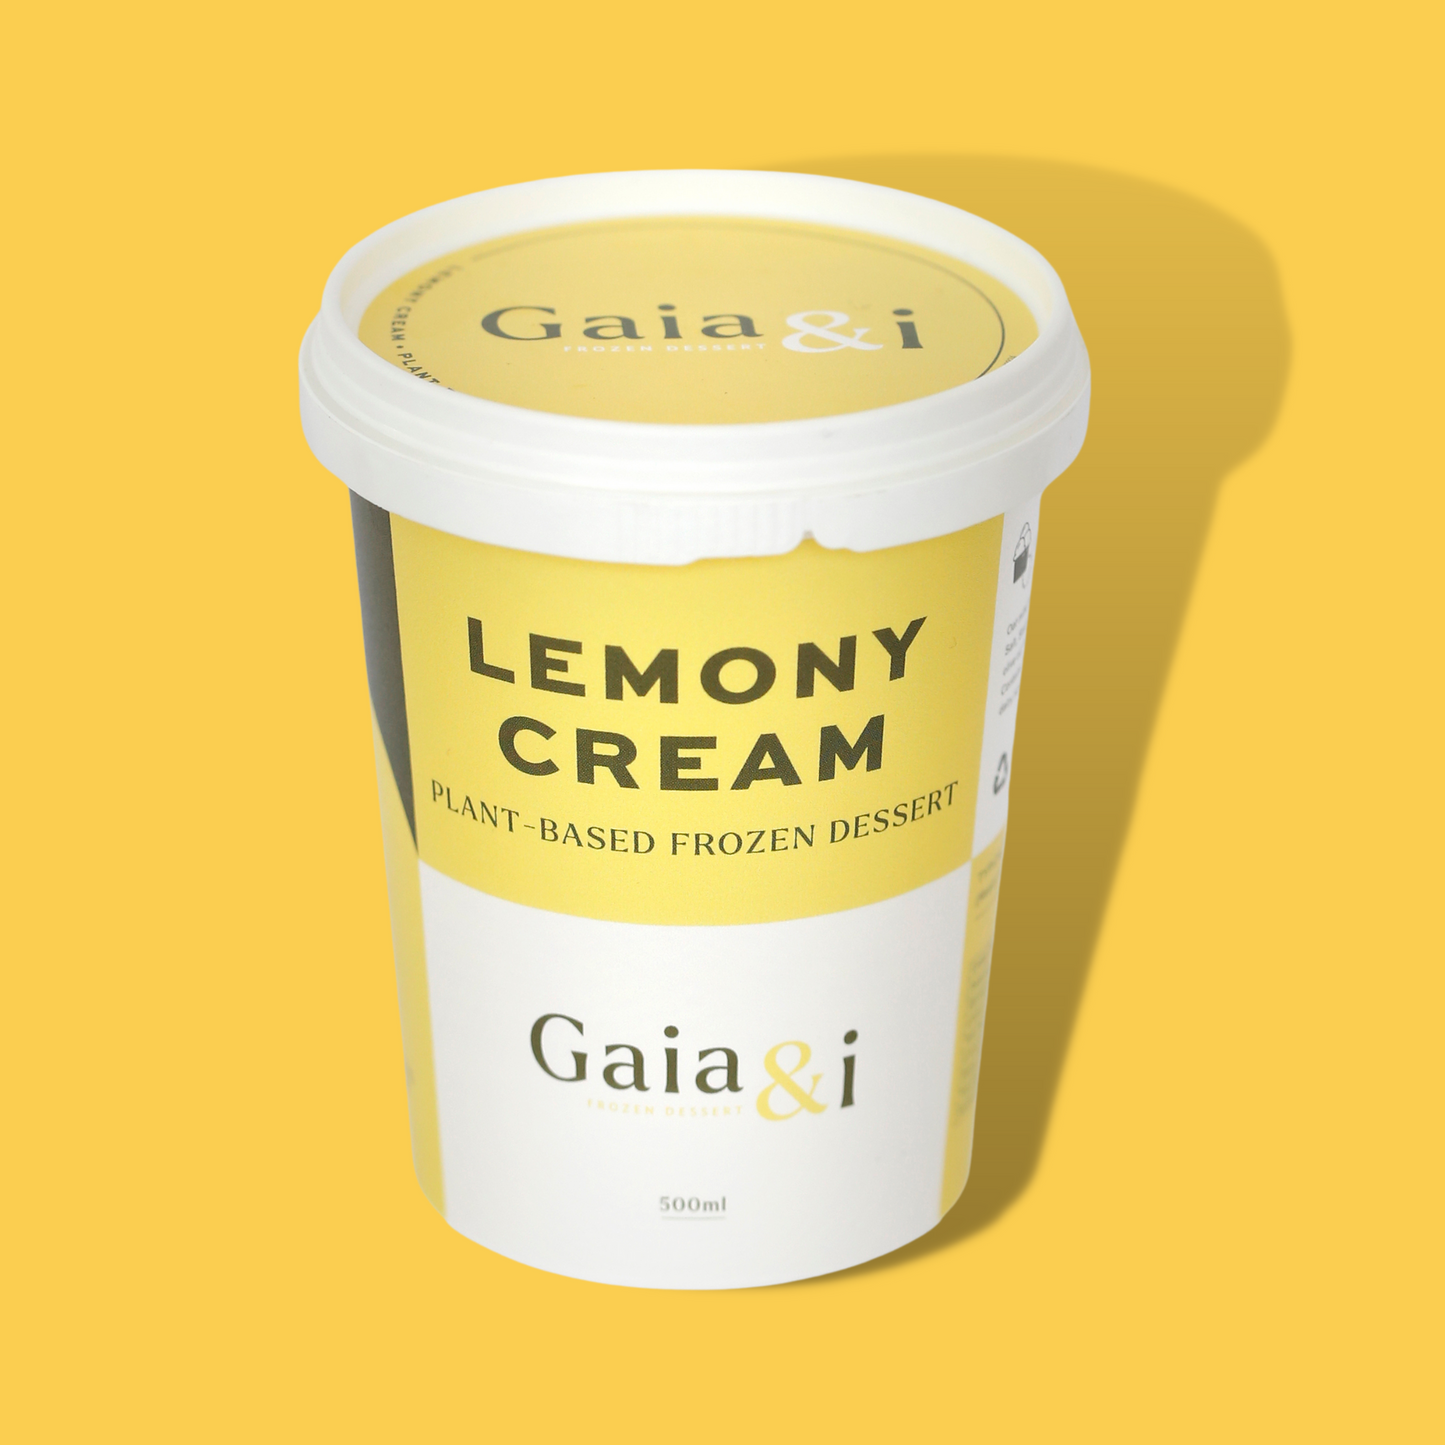 Gaia & I Lemony Cream 500ml tub